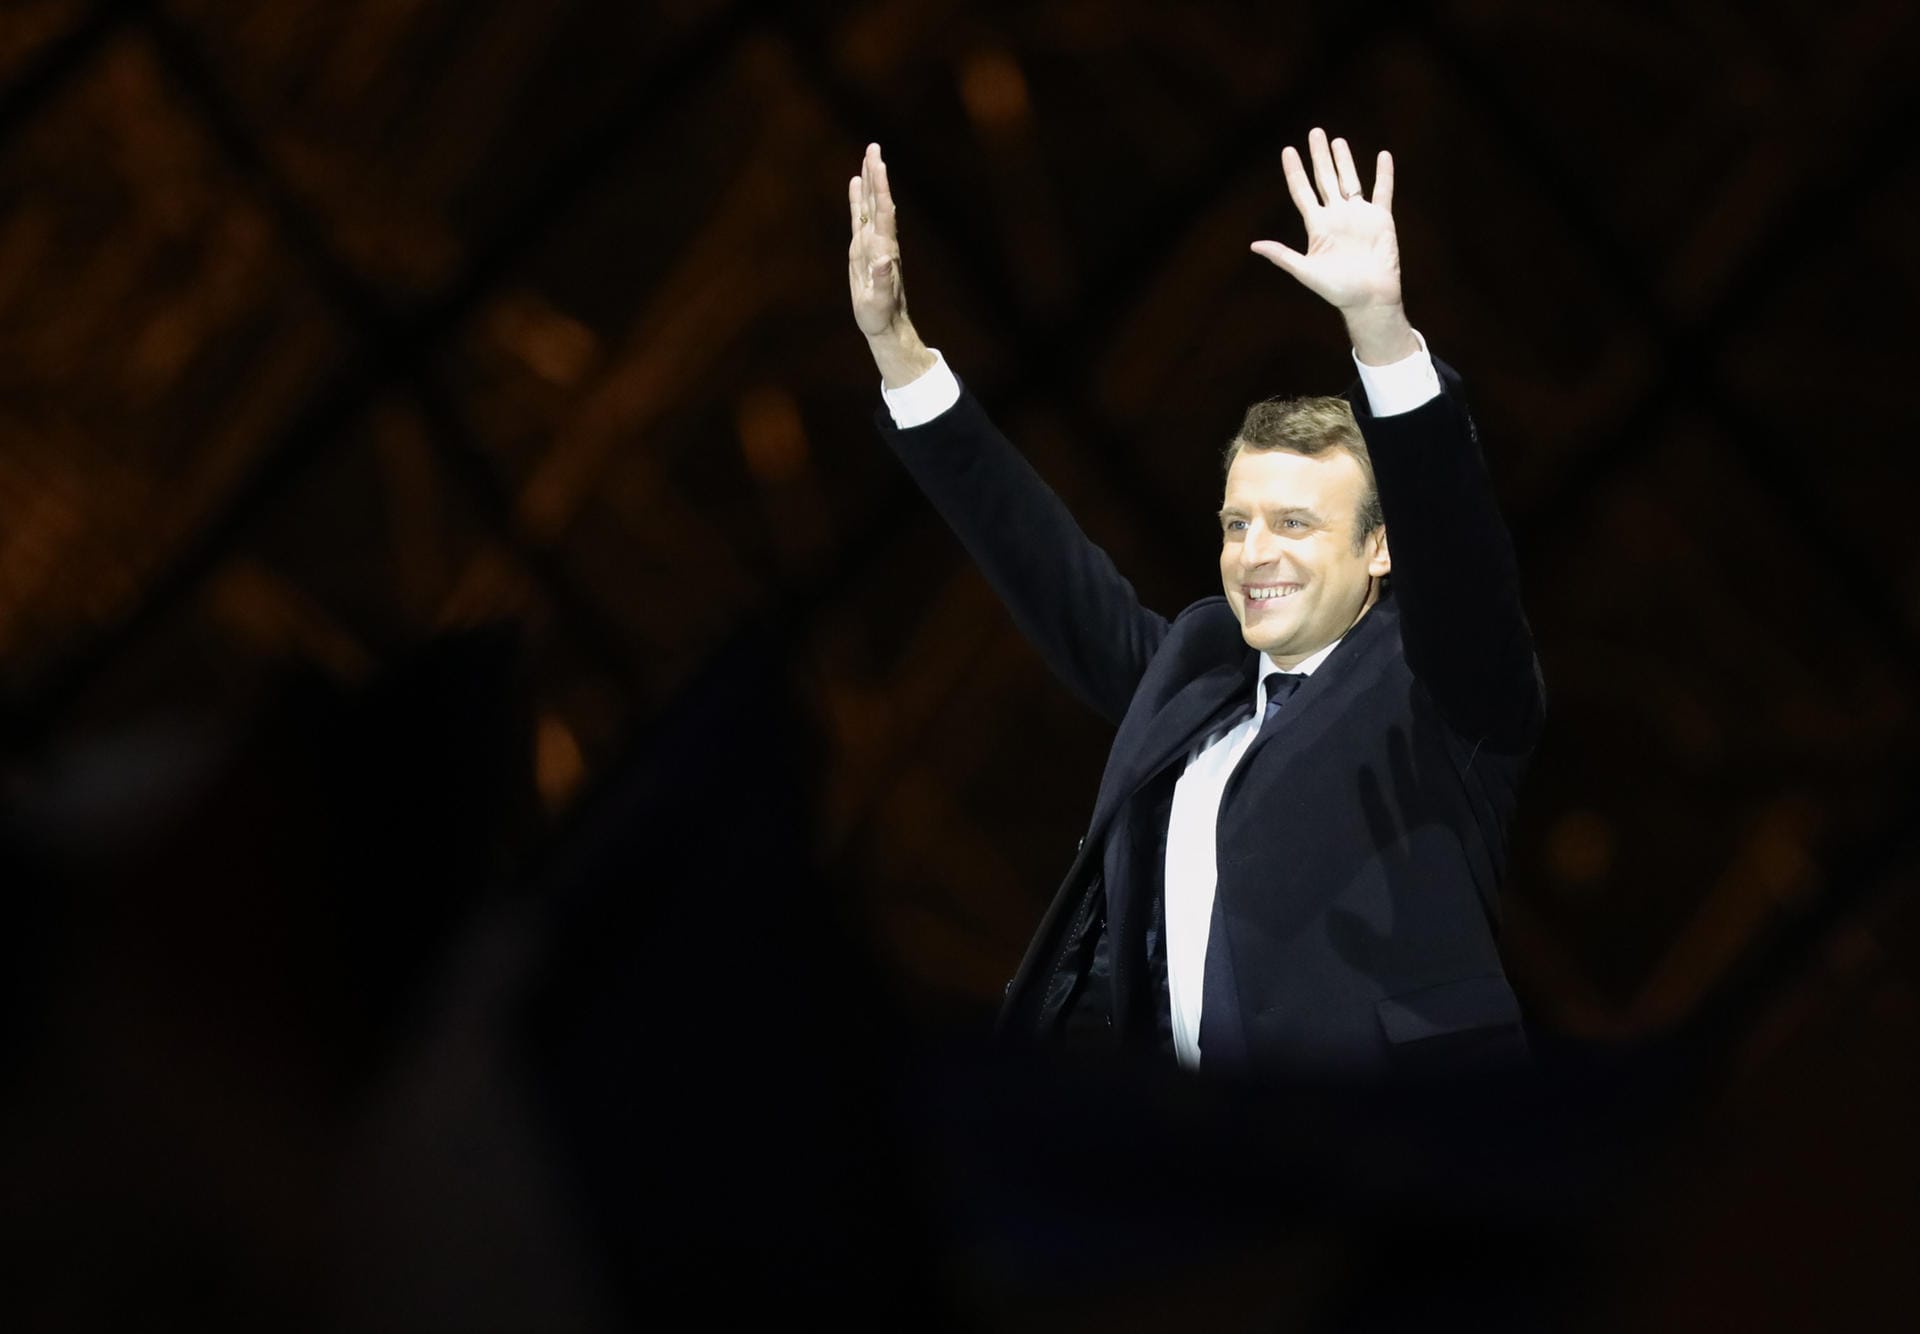 Vom politischen Außenseiter zum Präsidenten in Rekordzeit: Emmanuel Macron ist seit dem 14. Mai der mächtigste Mann in Frankreich und hat mit seiner neu gegründeten Partei En Marche das politische System unseres Nachbarn revolutioniert. Man darf gespannt sein, was er mit Europa vorhat.